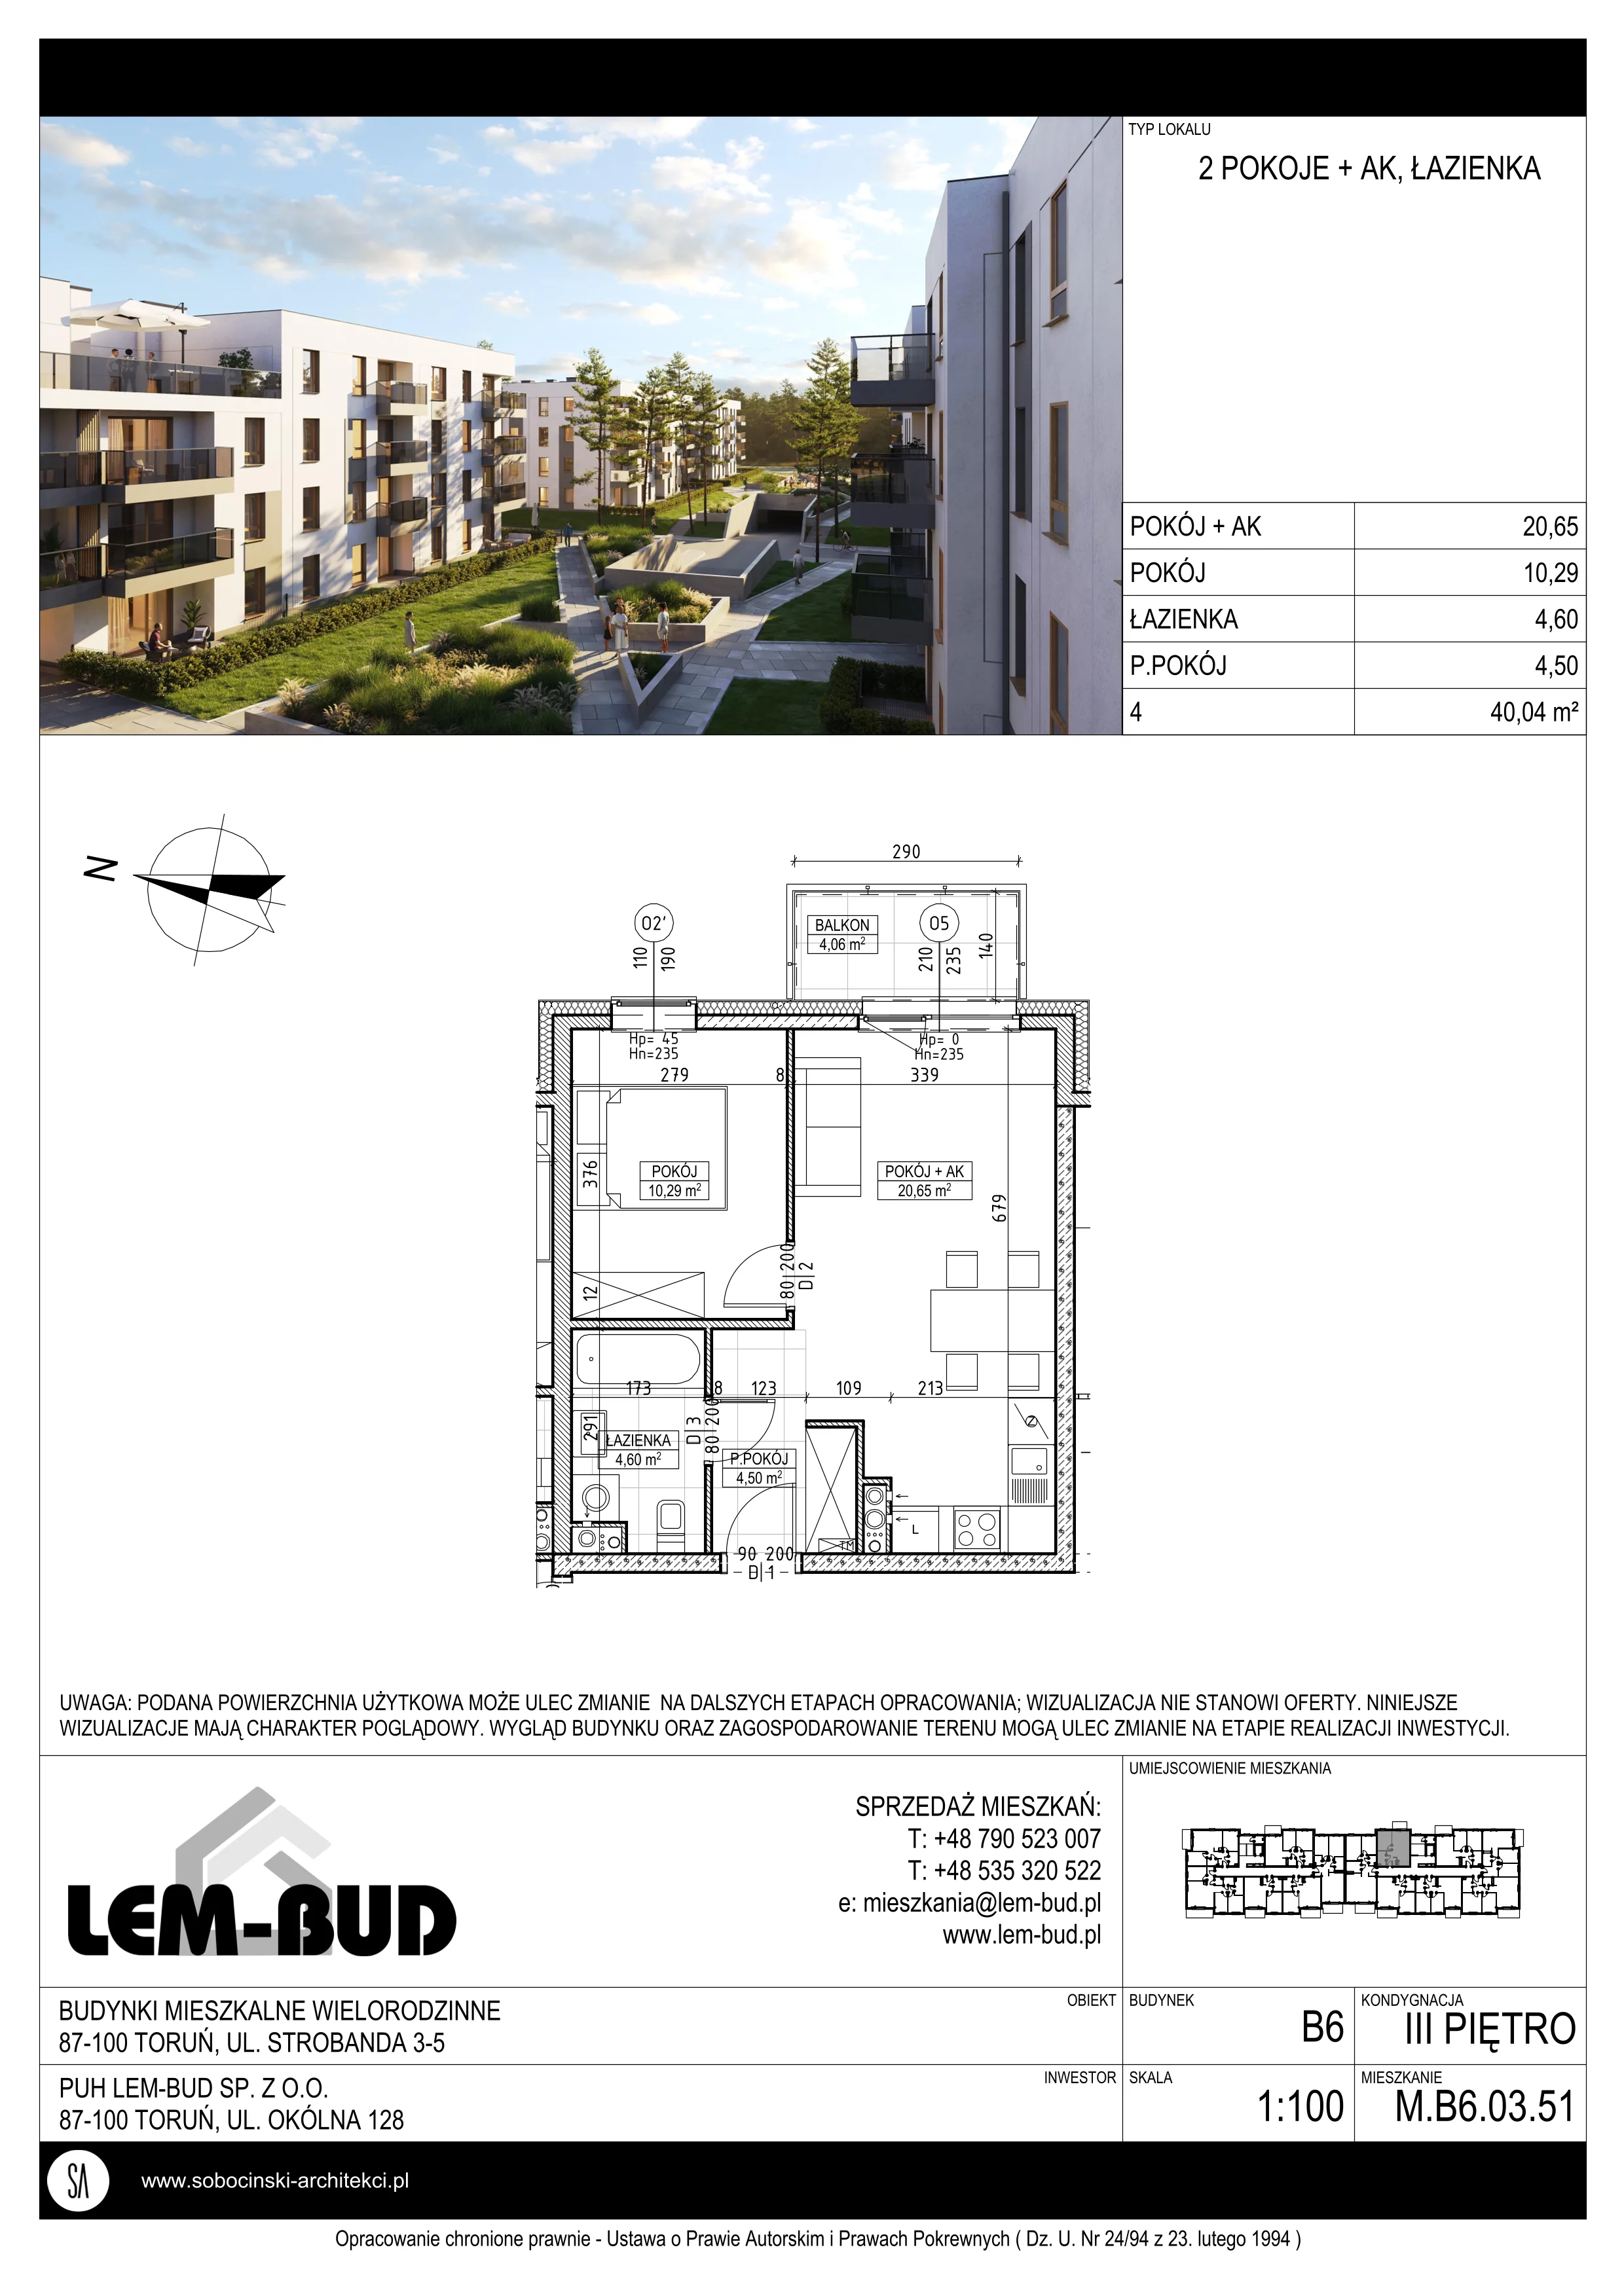 Mieszkanie 40,04 m², piętro 3, oferta nr M.B6.03.51, Osiedle Harmonia, Toruń, Wrzosy, JAR, ul. Strobanda 3-5